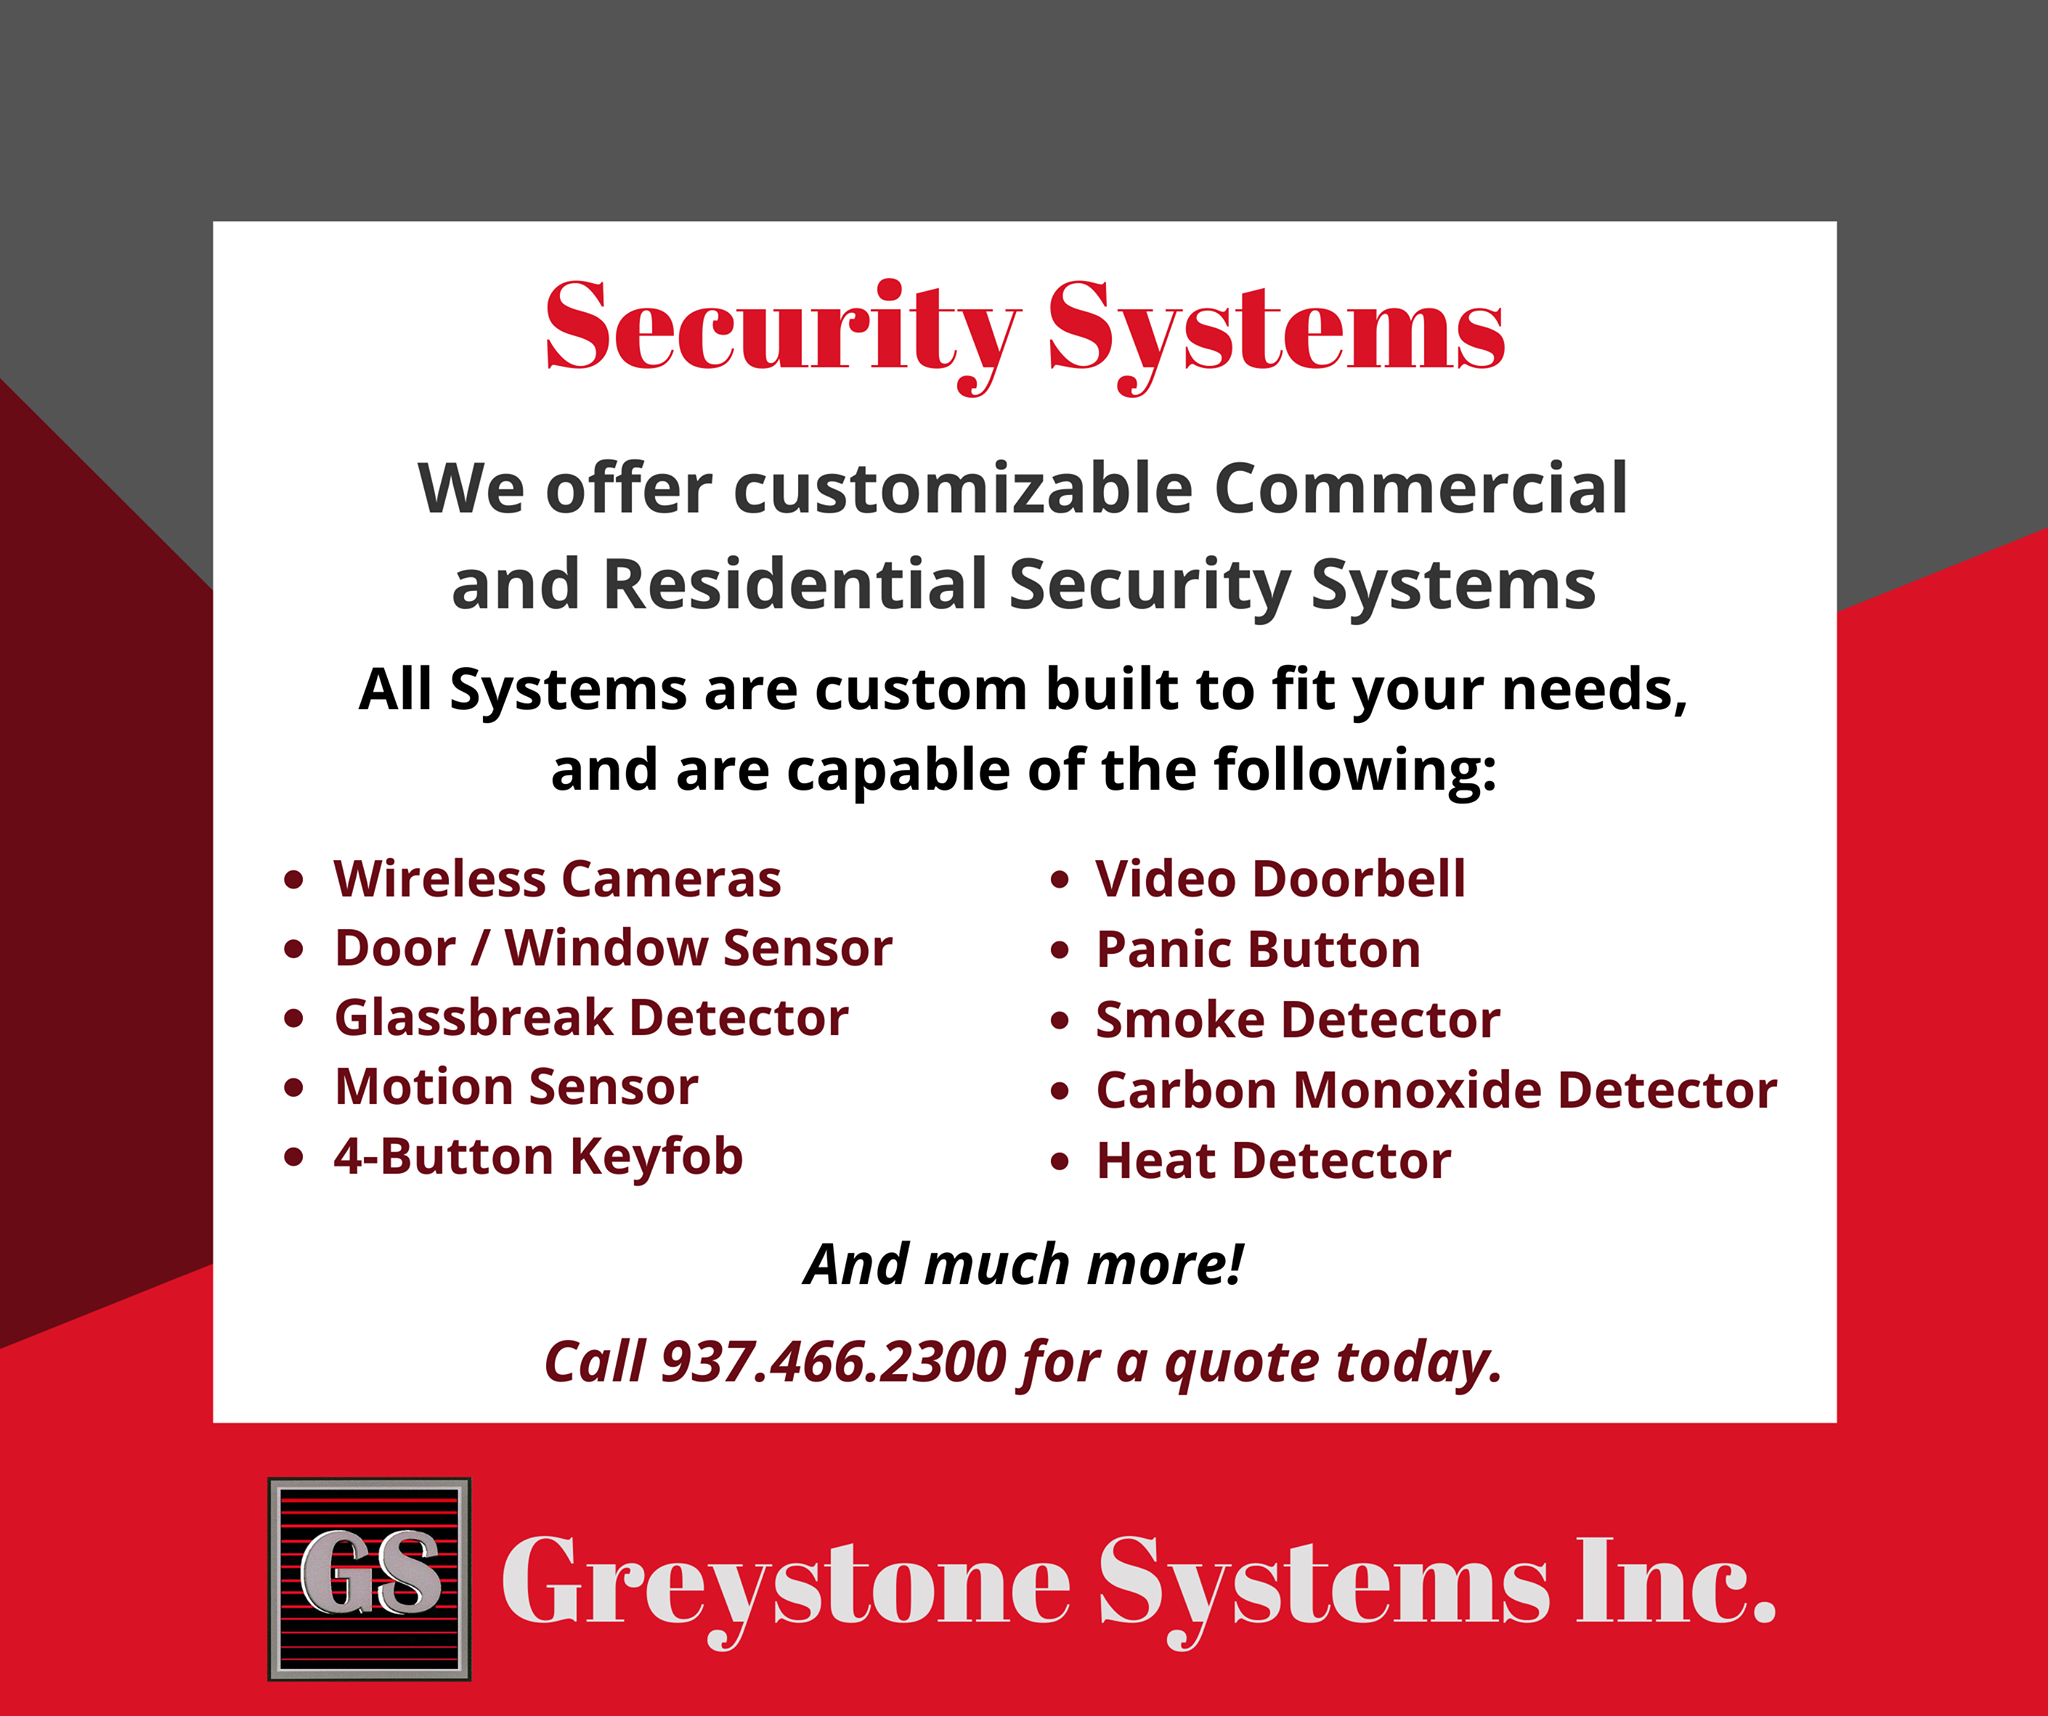 Greystone Systems Inc